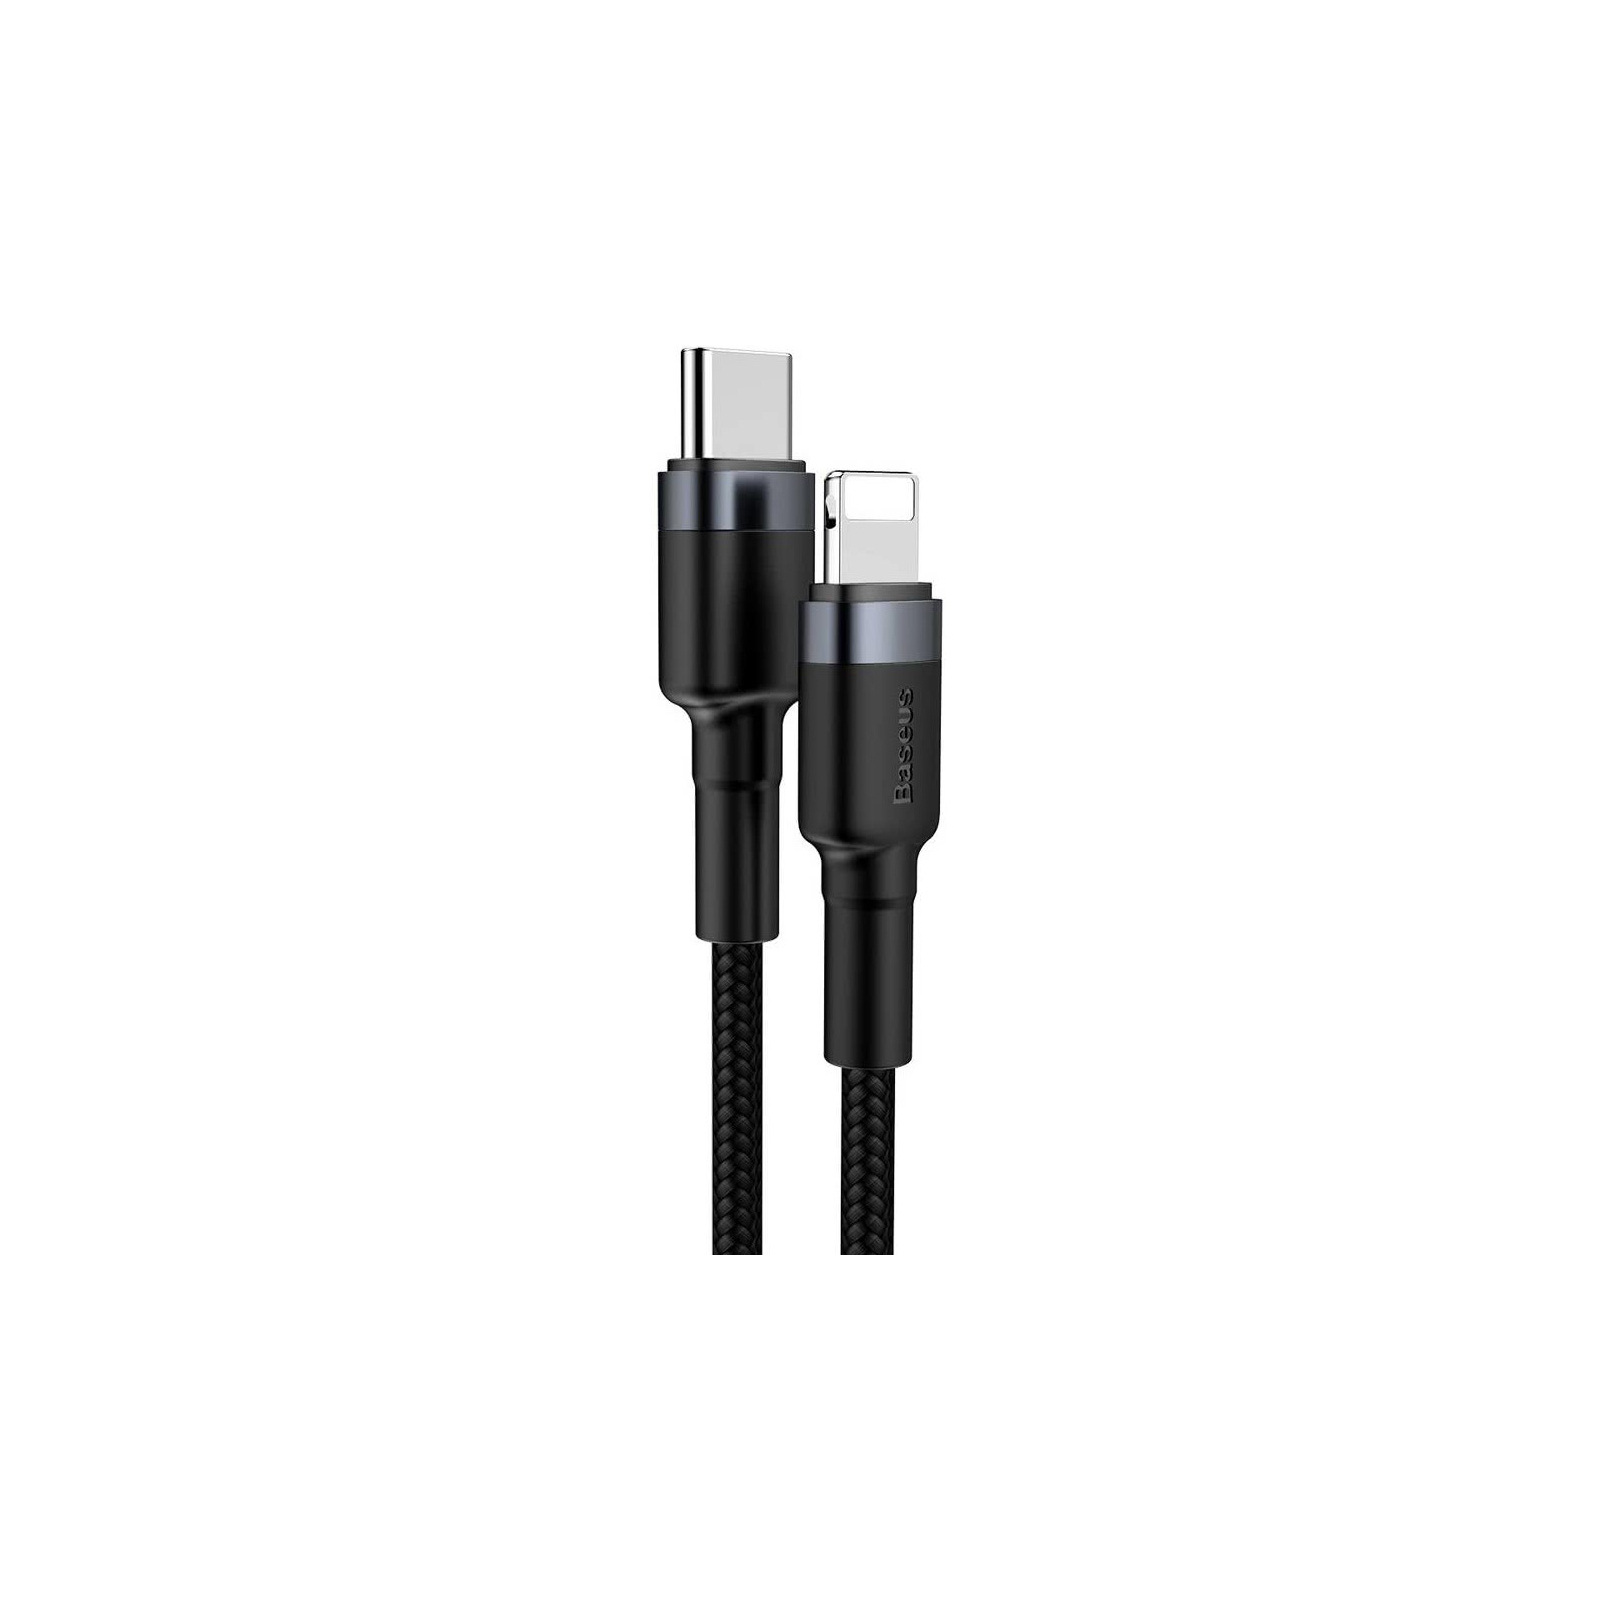 Дата кабель USB-C to Lightning 1.0m 18W 2.1A Cafule Black-Grey Baseus (CATLKLF-G1) изображение 3